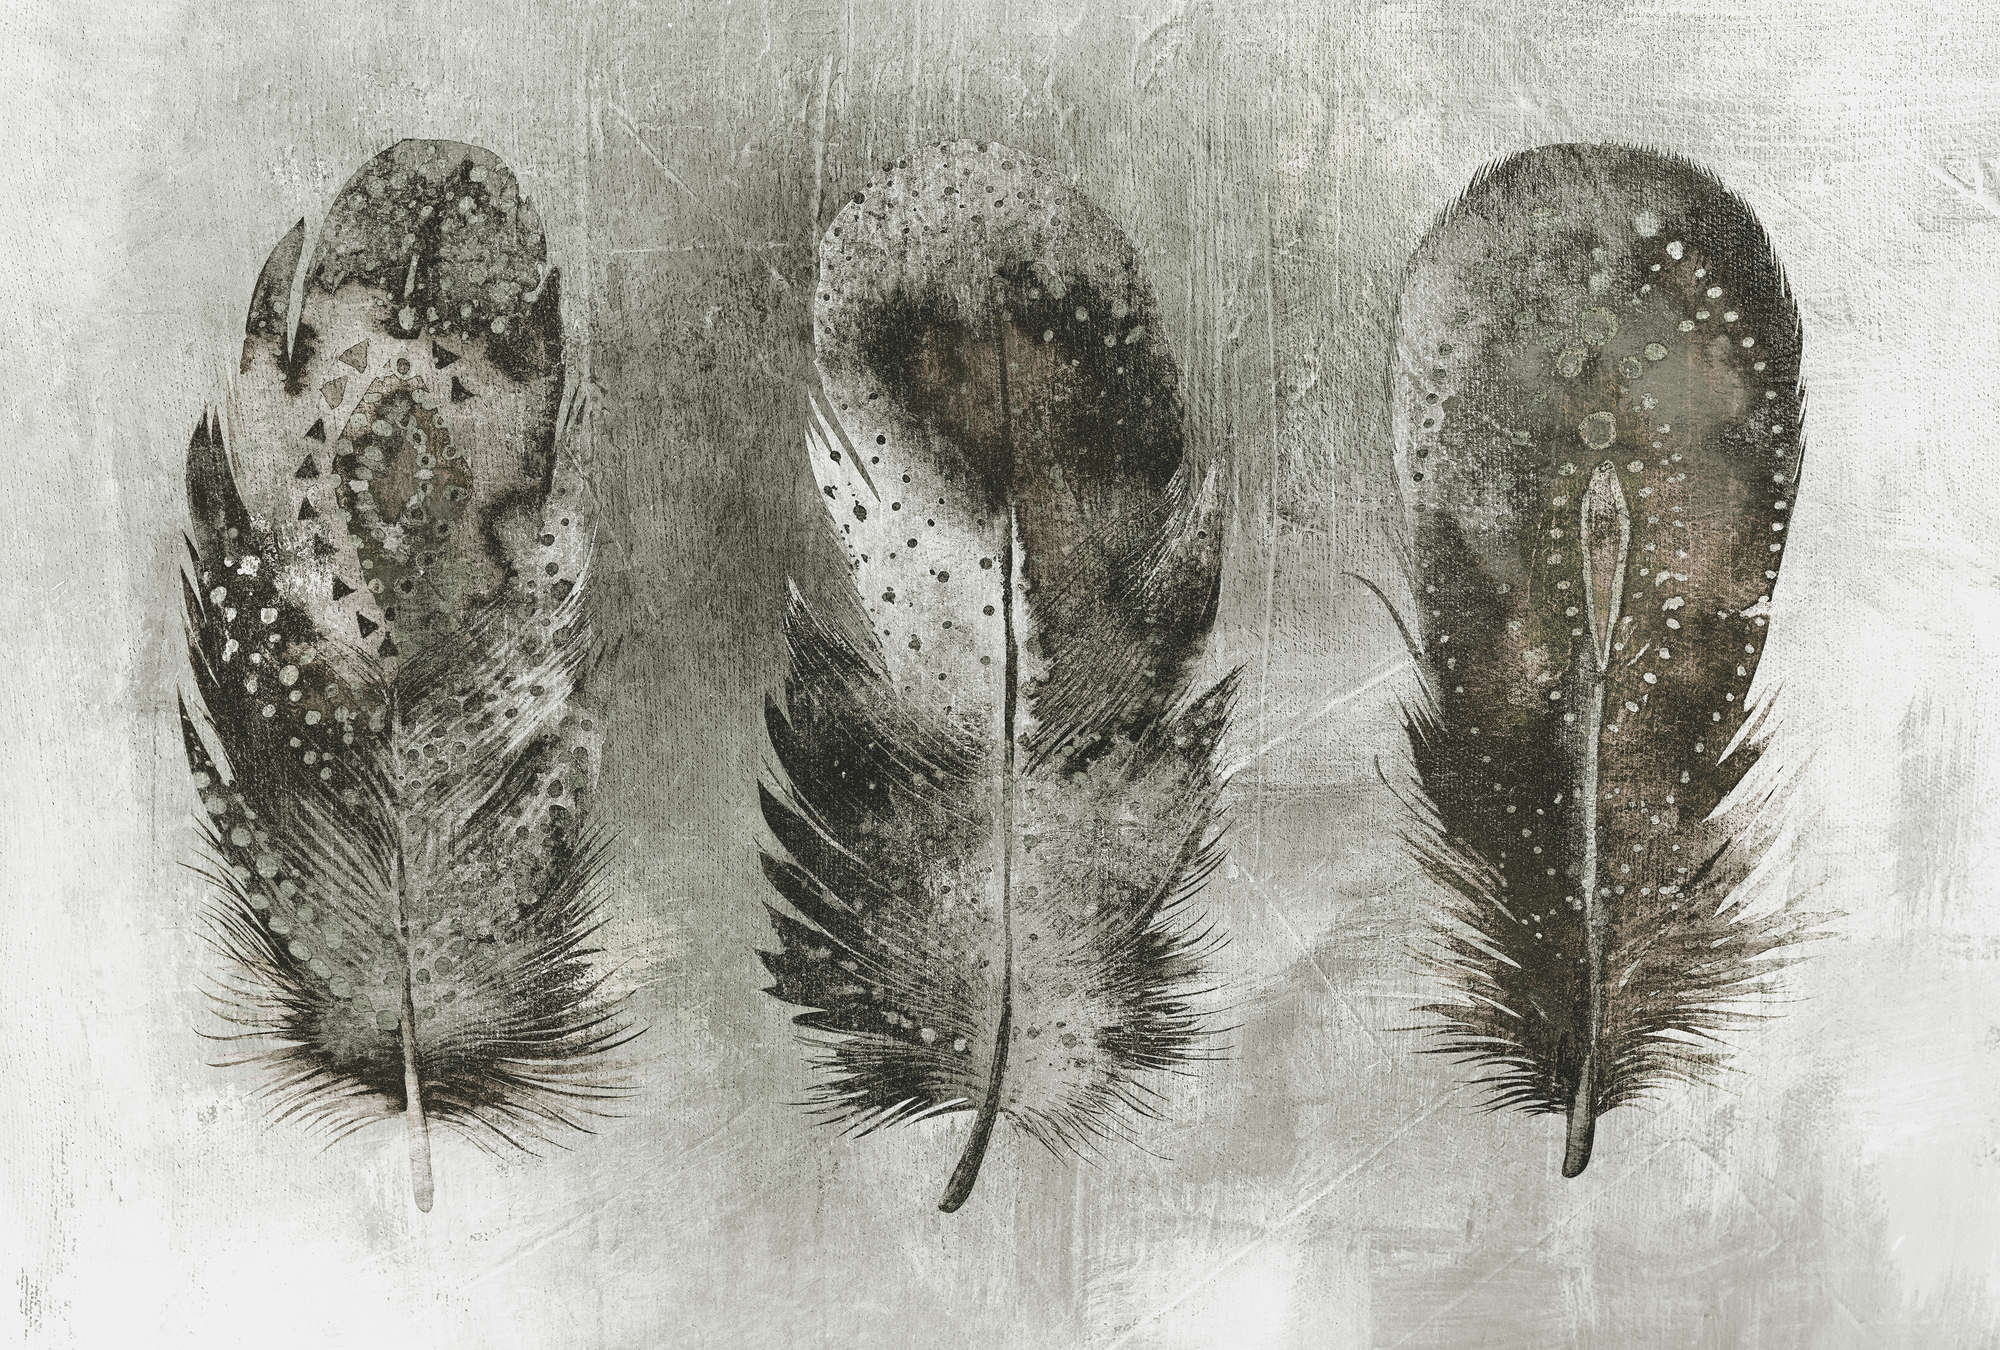             Papel pintado fotográfico en blanco y negro, plumas en estilo bohemio - gris, blanco, negro
        